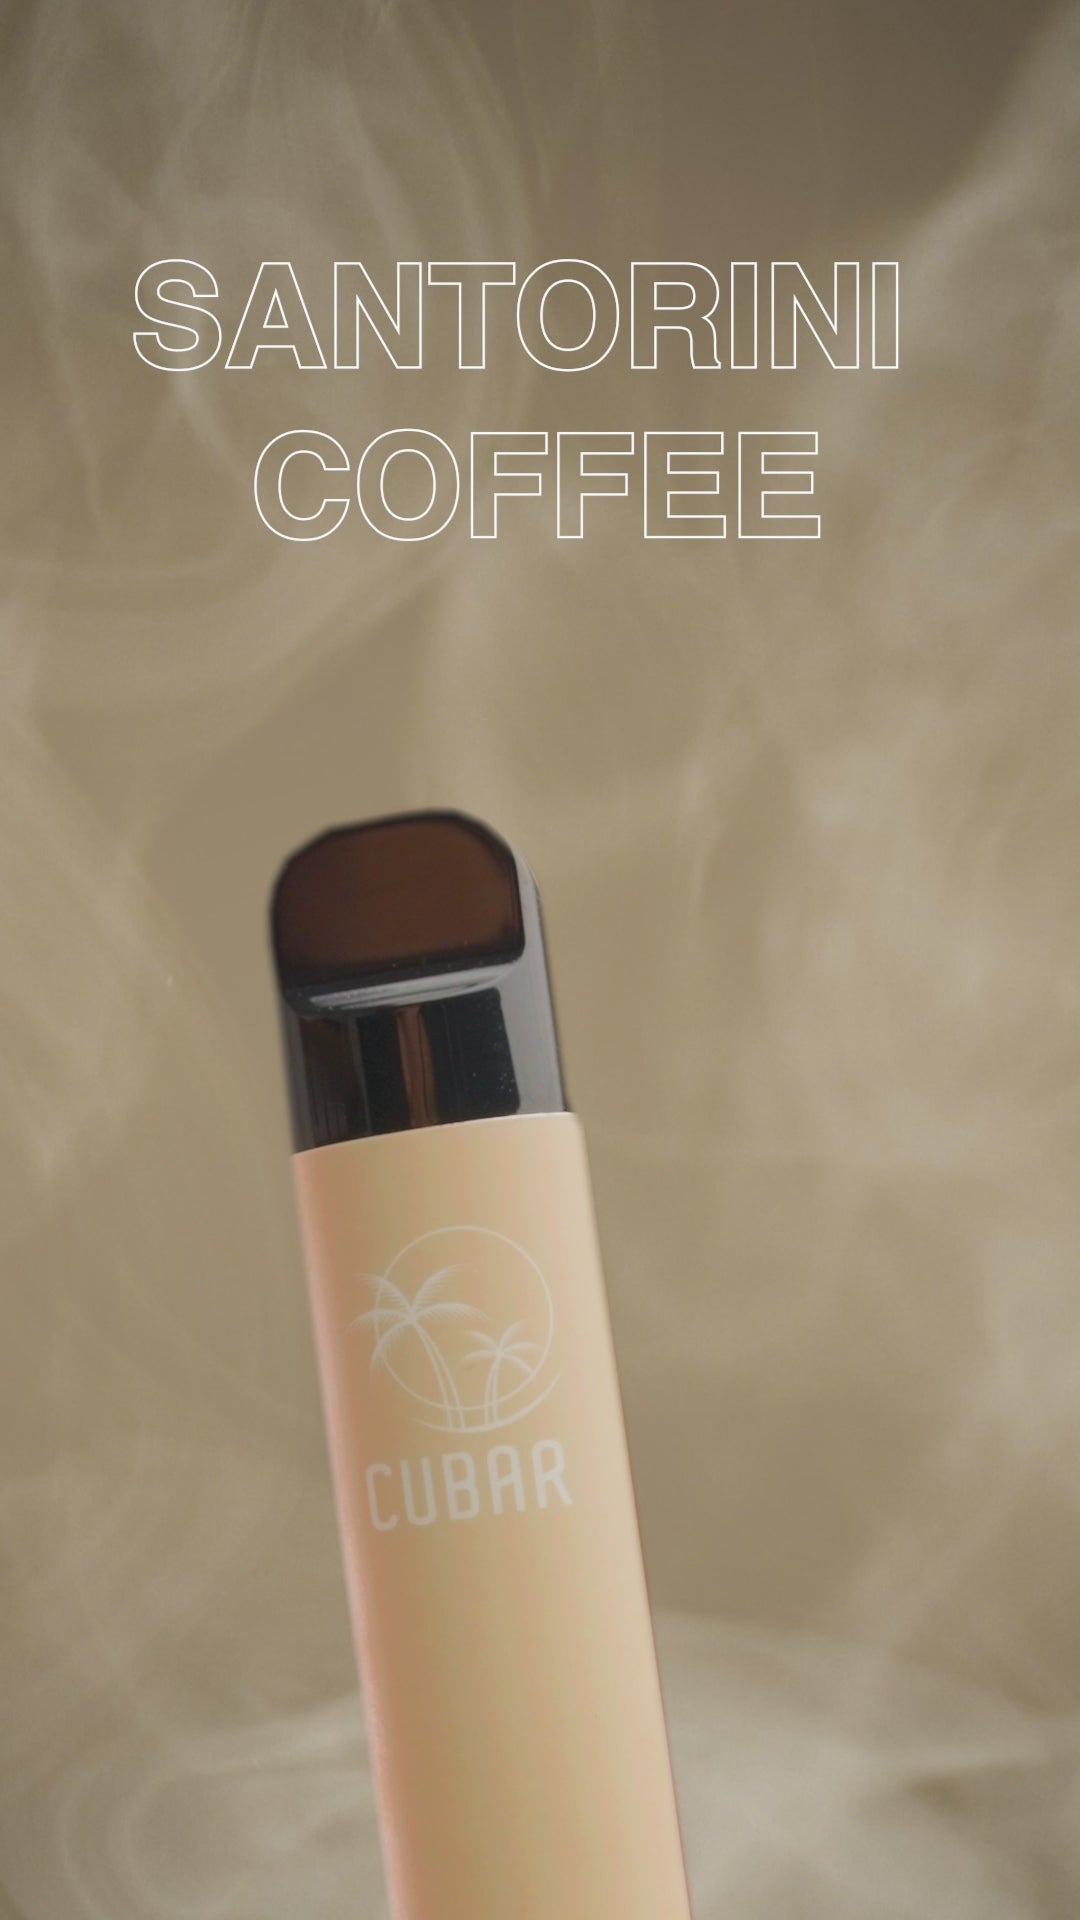 Cubar Club Santorini Coffee Vape Stick Pen Einweg E-Zigarette Dampfen Werbevideo Video Vape Kaffee Geschmack